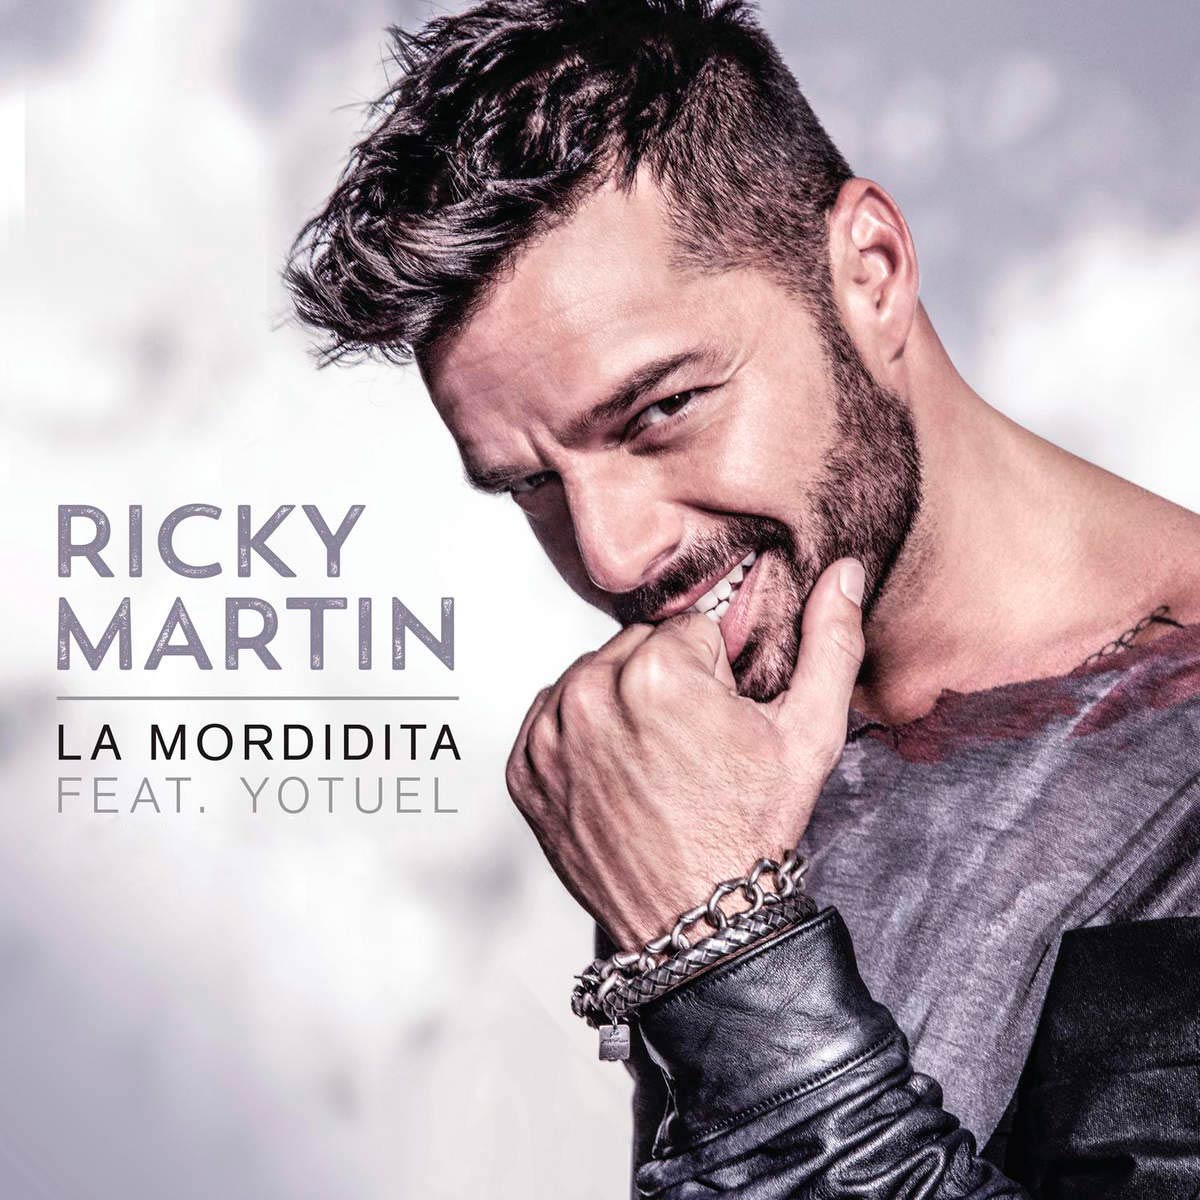 Ricky Martin con Yotuel: La mordidita, la portada de la canción